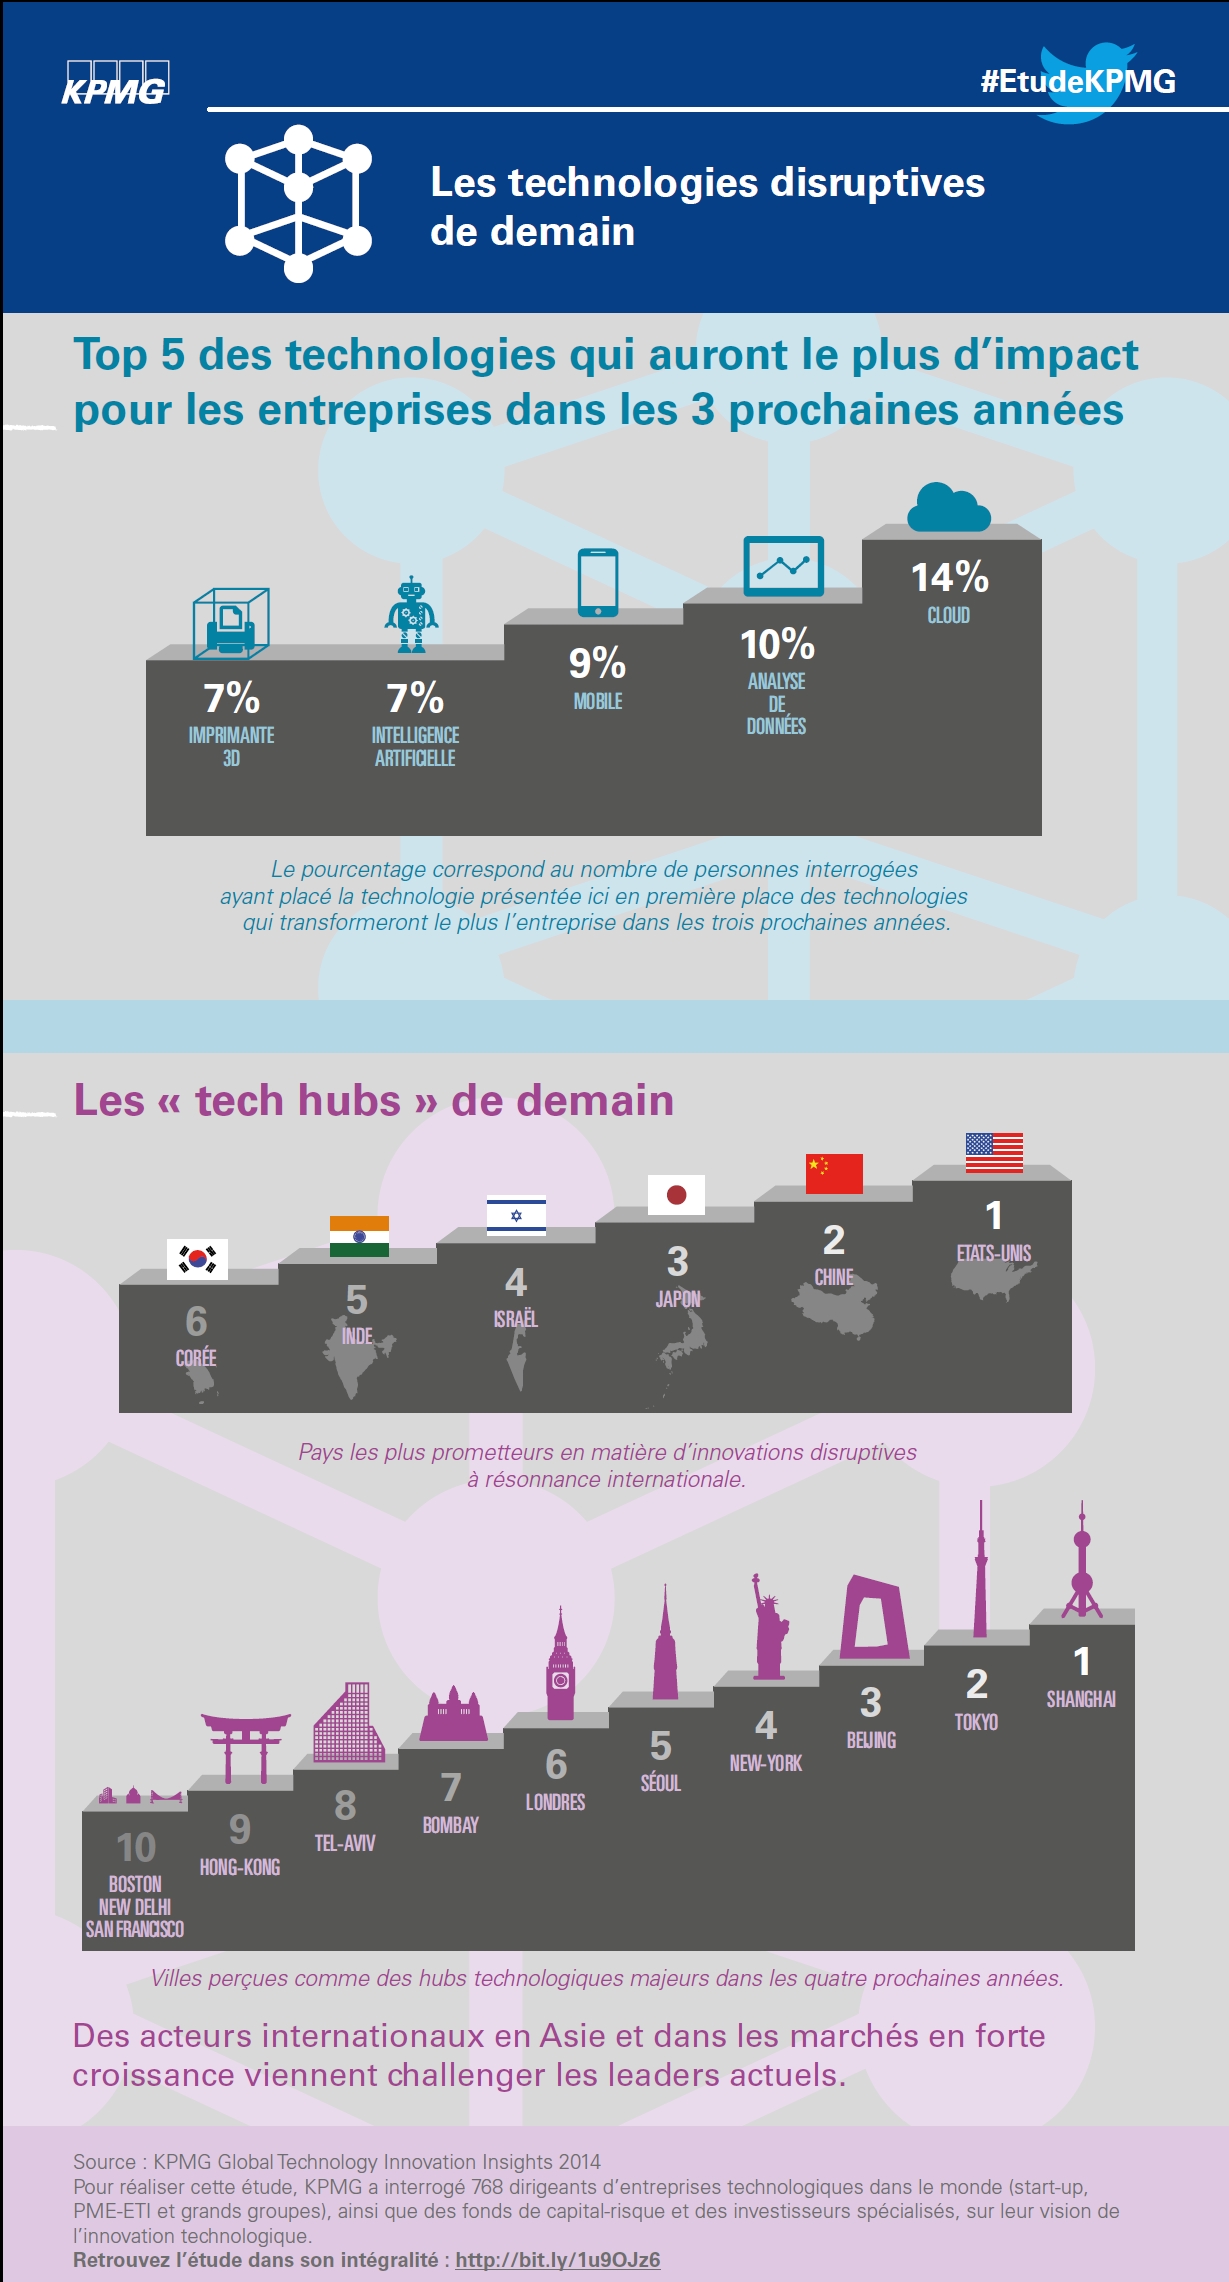 Les technologies disruptives et les tech hubs de demain (infographie)